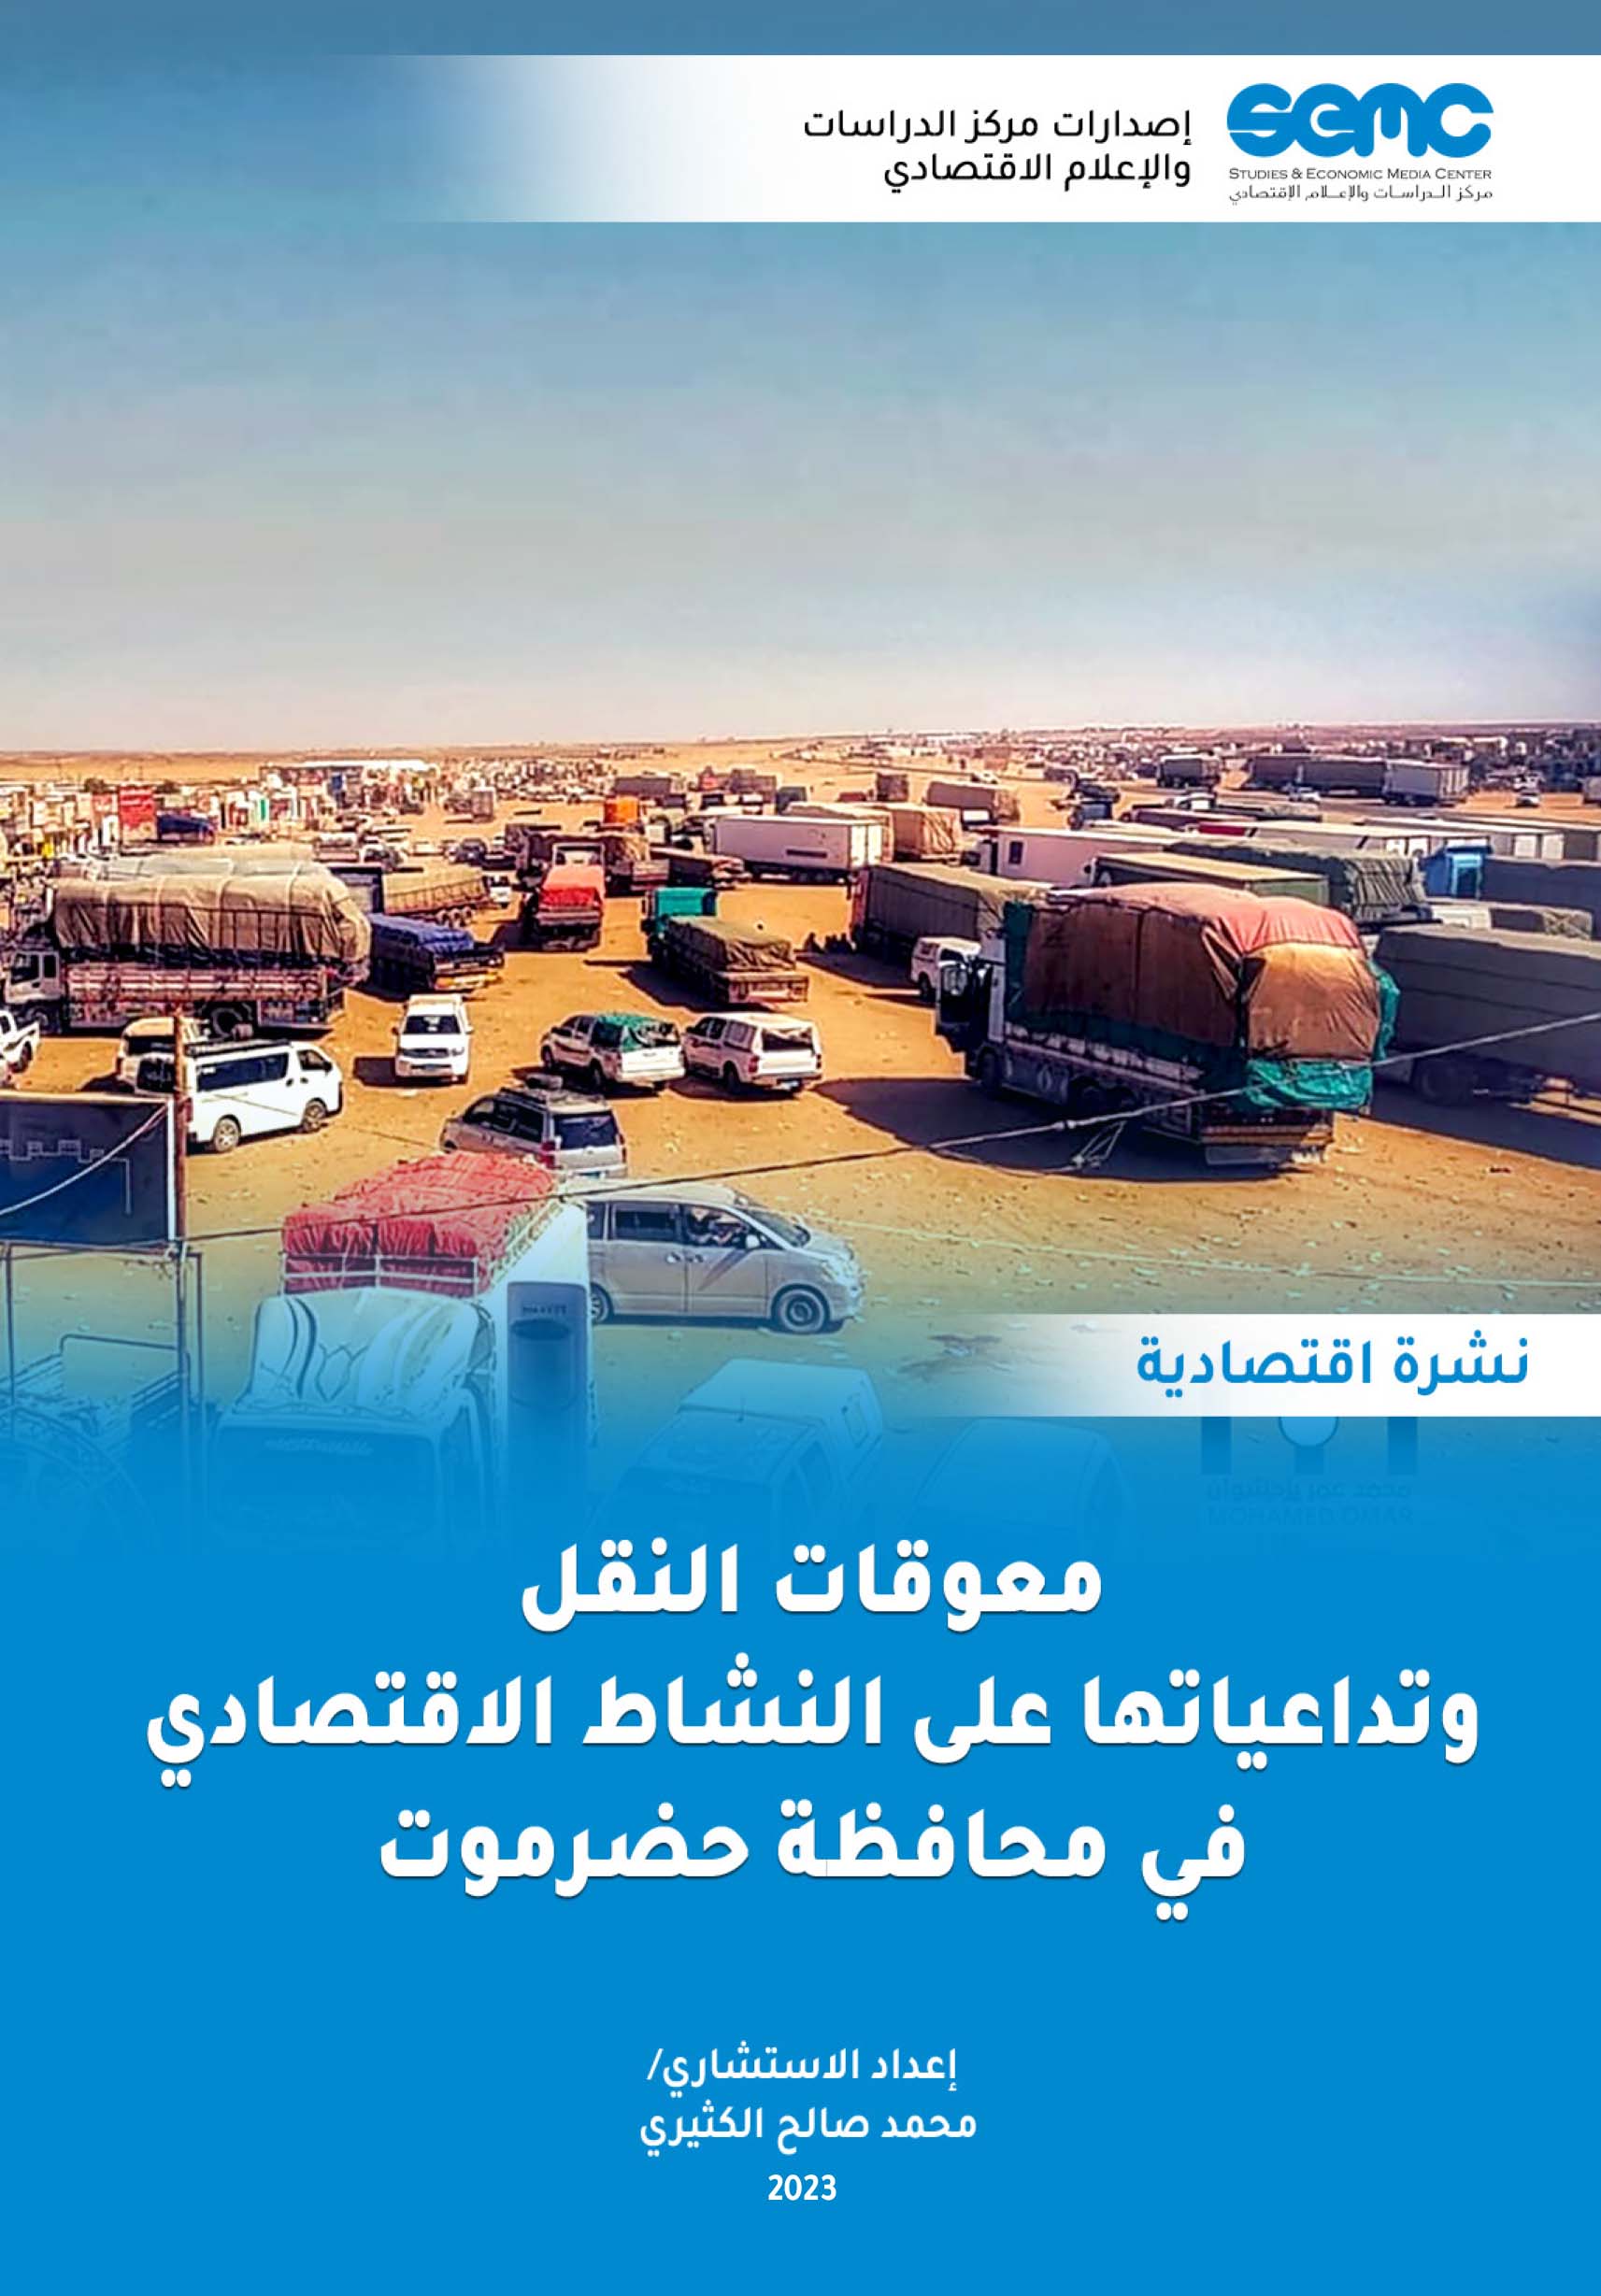 الإعلام الاقتصادي يطالب بإزالة كافة معوقات نقل السلع إلى محافظة حضرموت